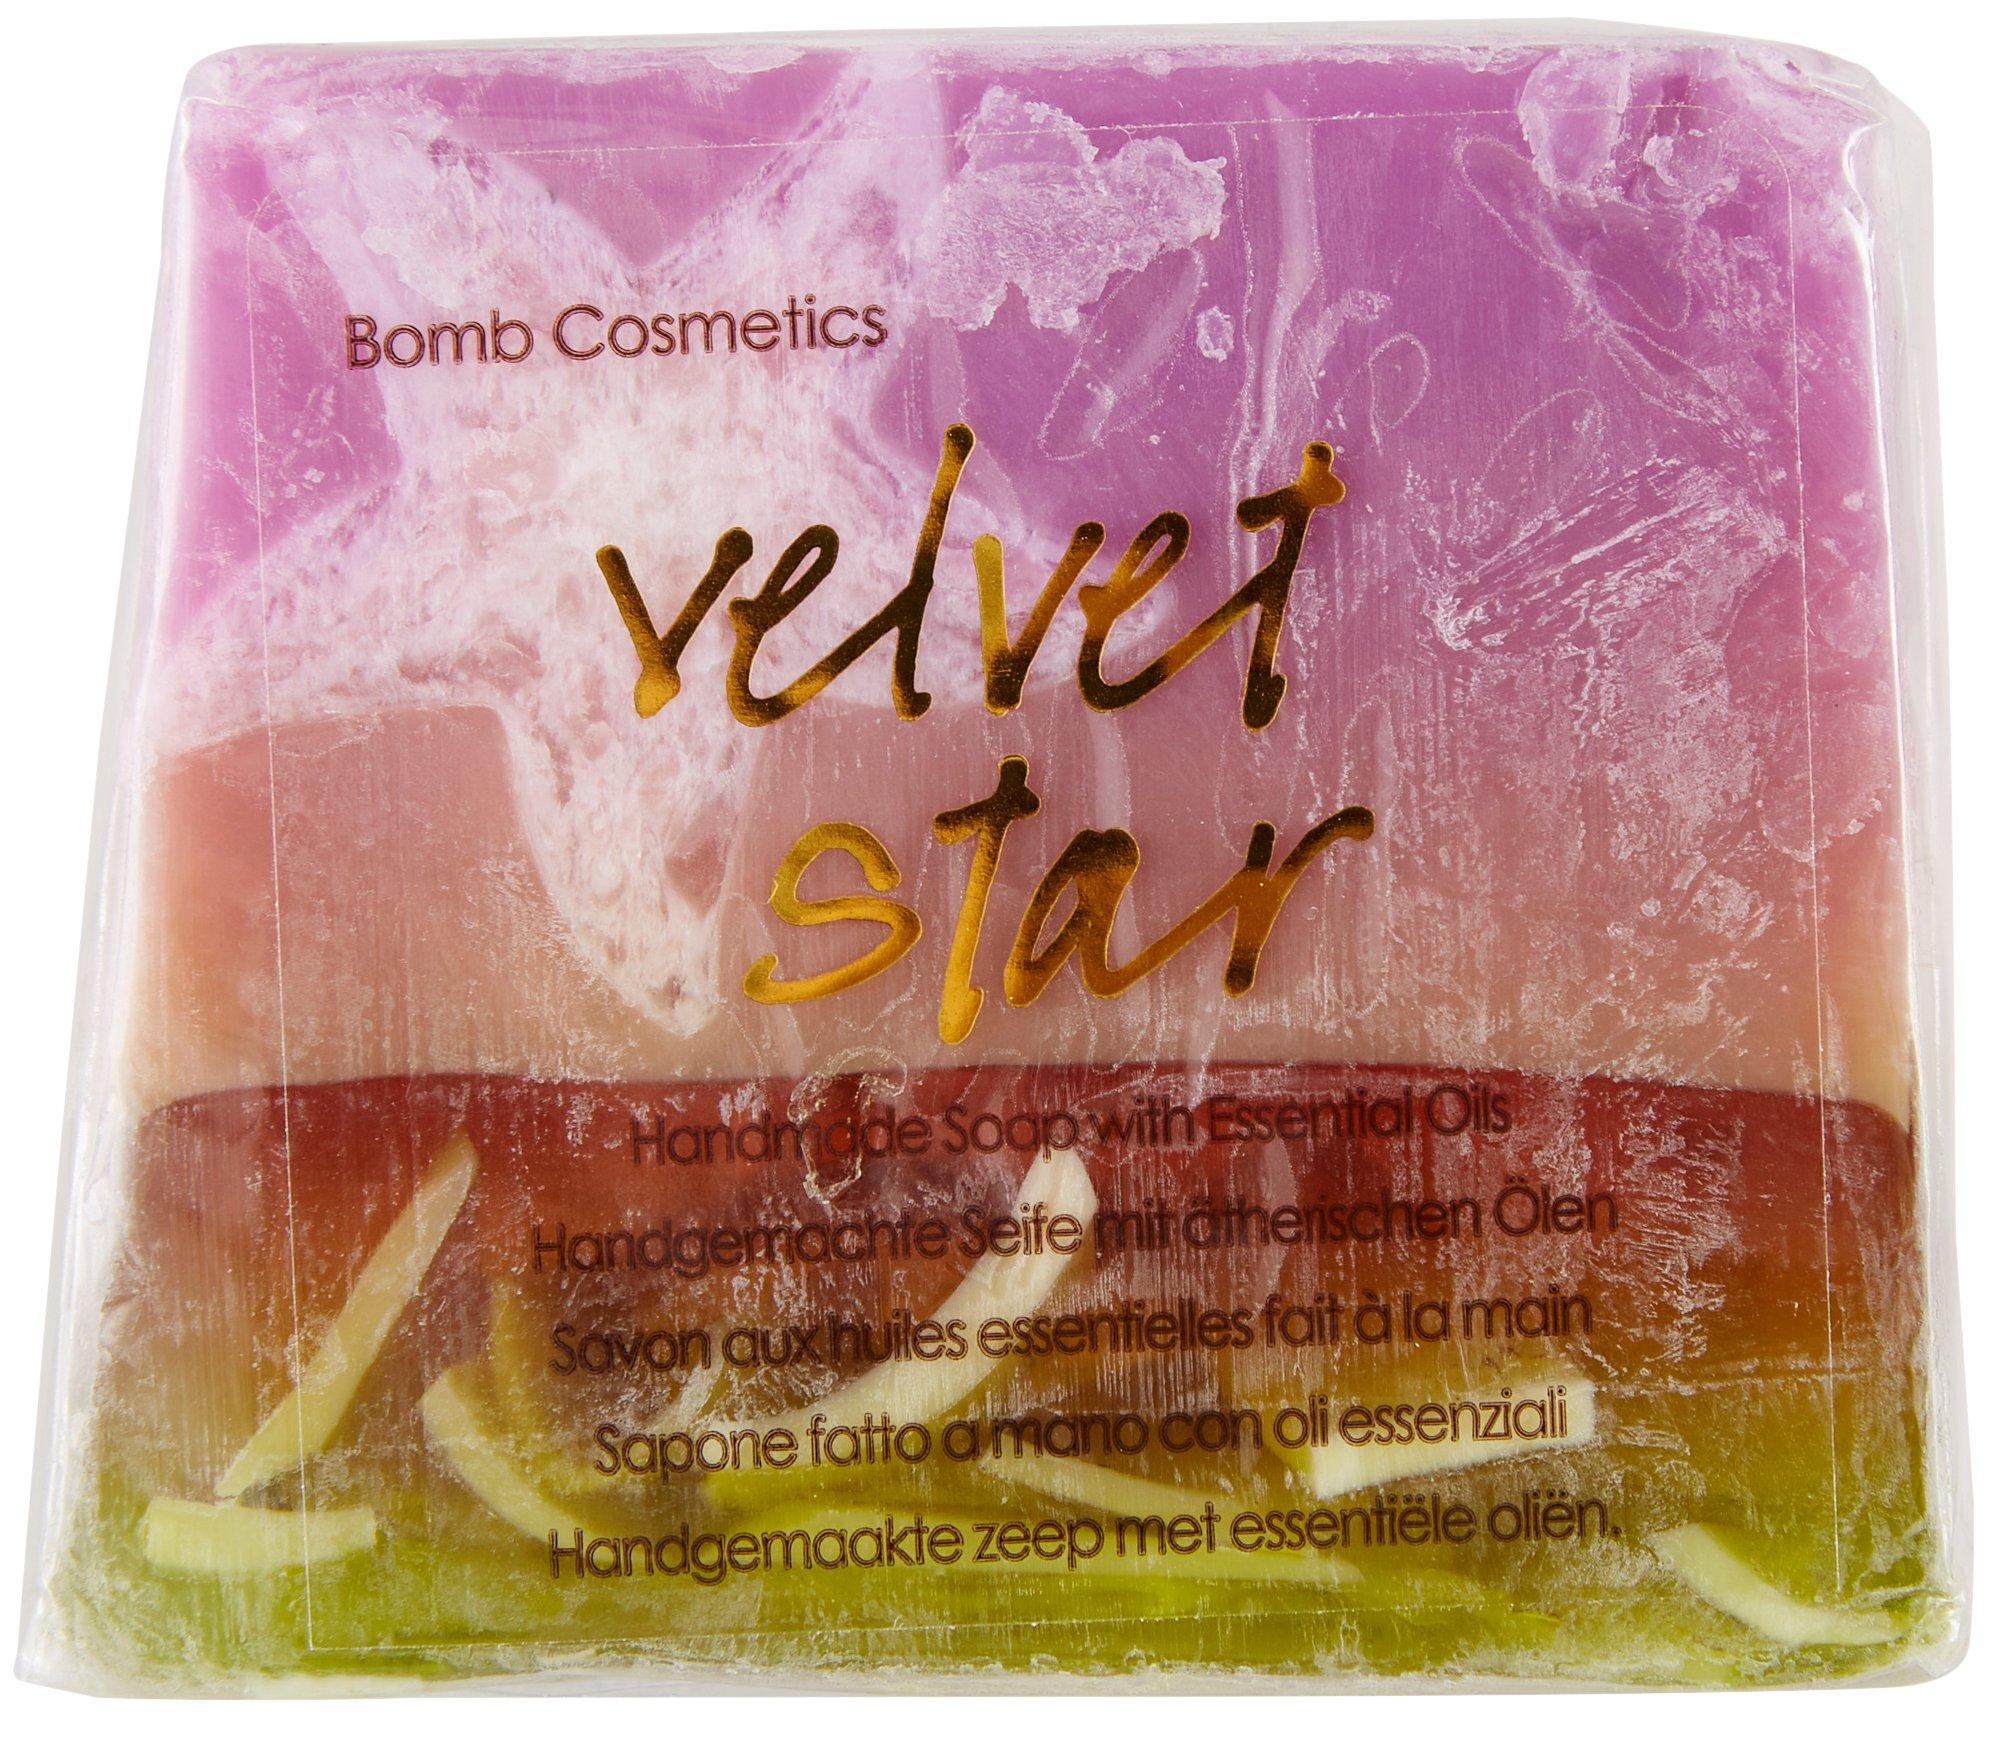 Bomb Cosmetics Velvet Star Handmade Soap 3.5 oz.